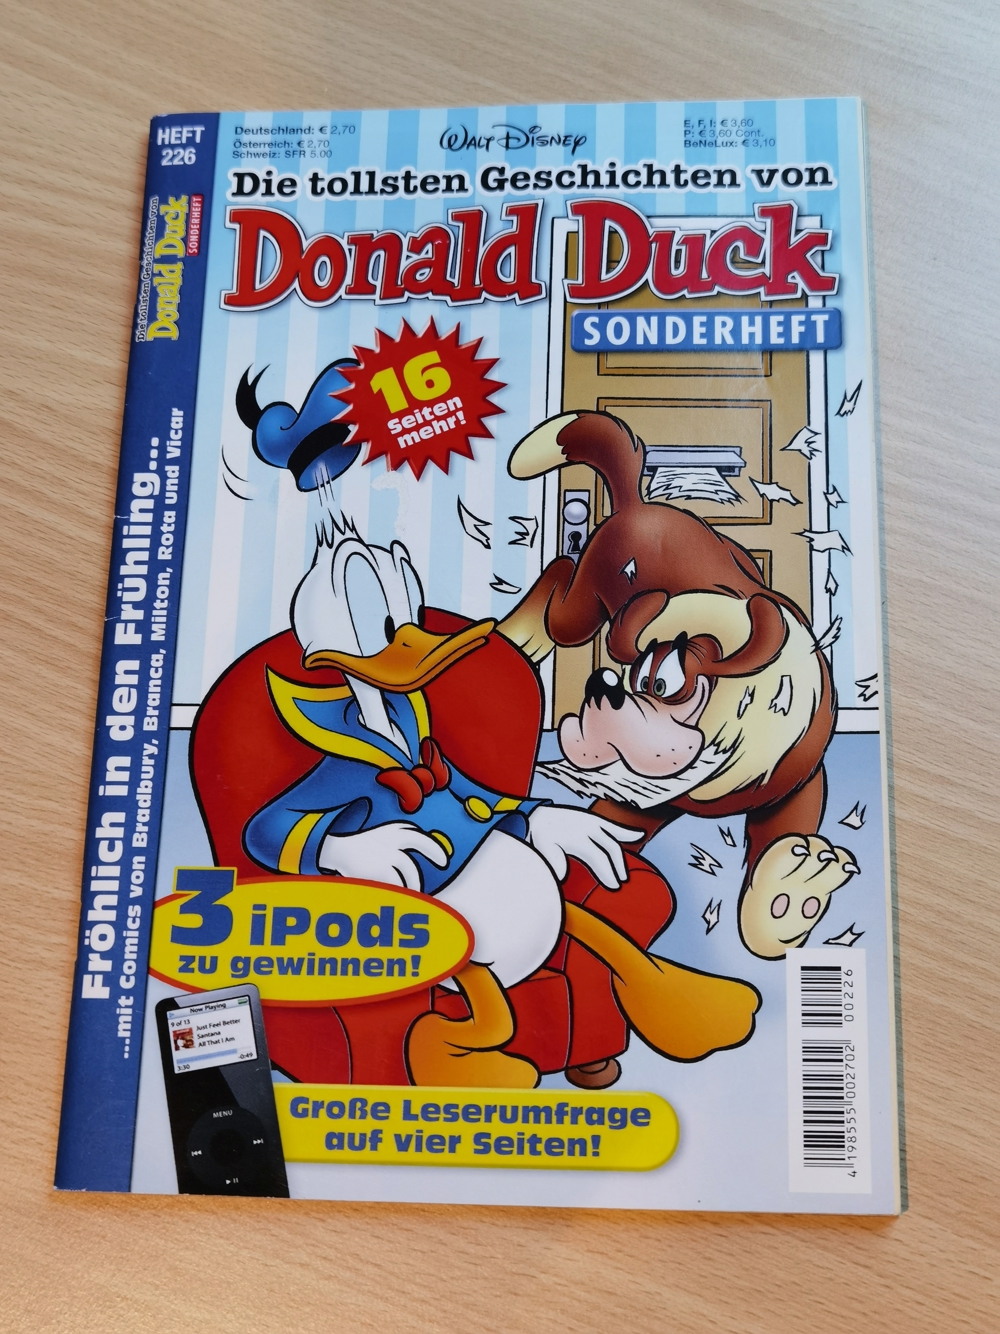 Die tollsten Geschichten von Donald Duck (Sonderheft) 226 (2006) / Walt Disney